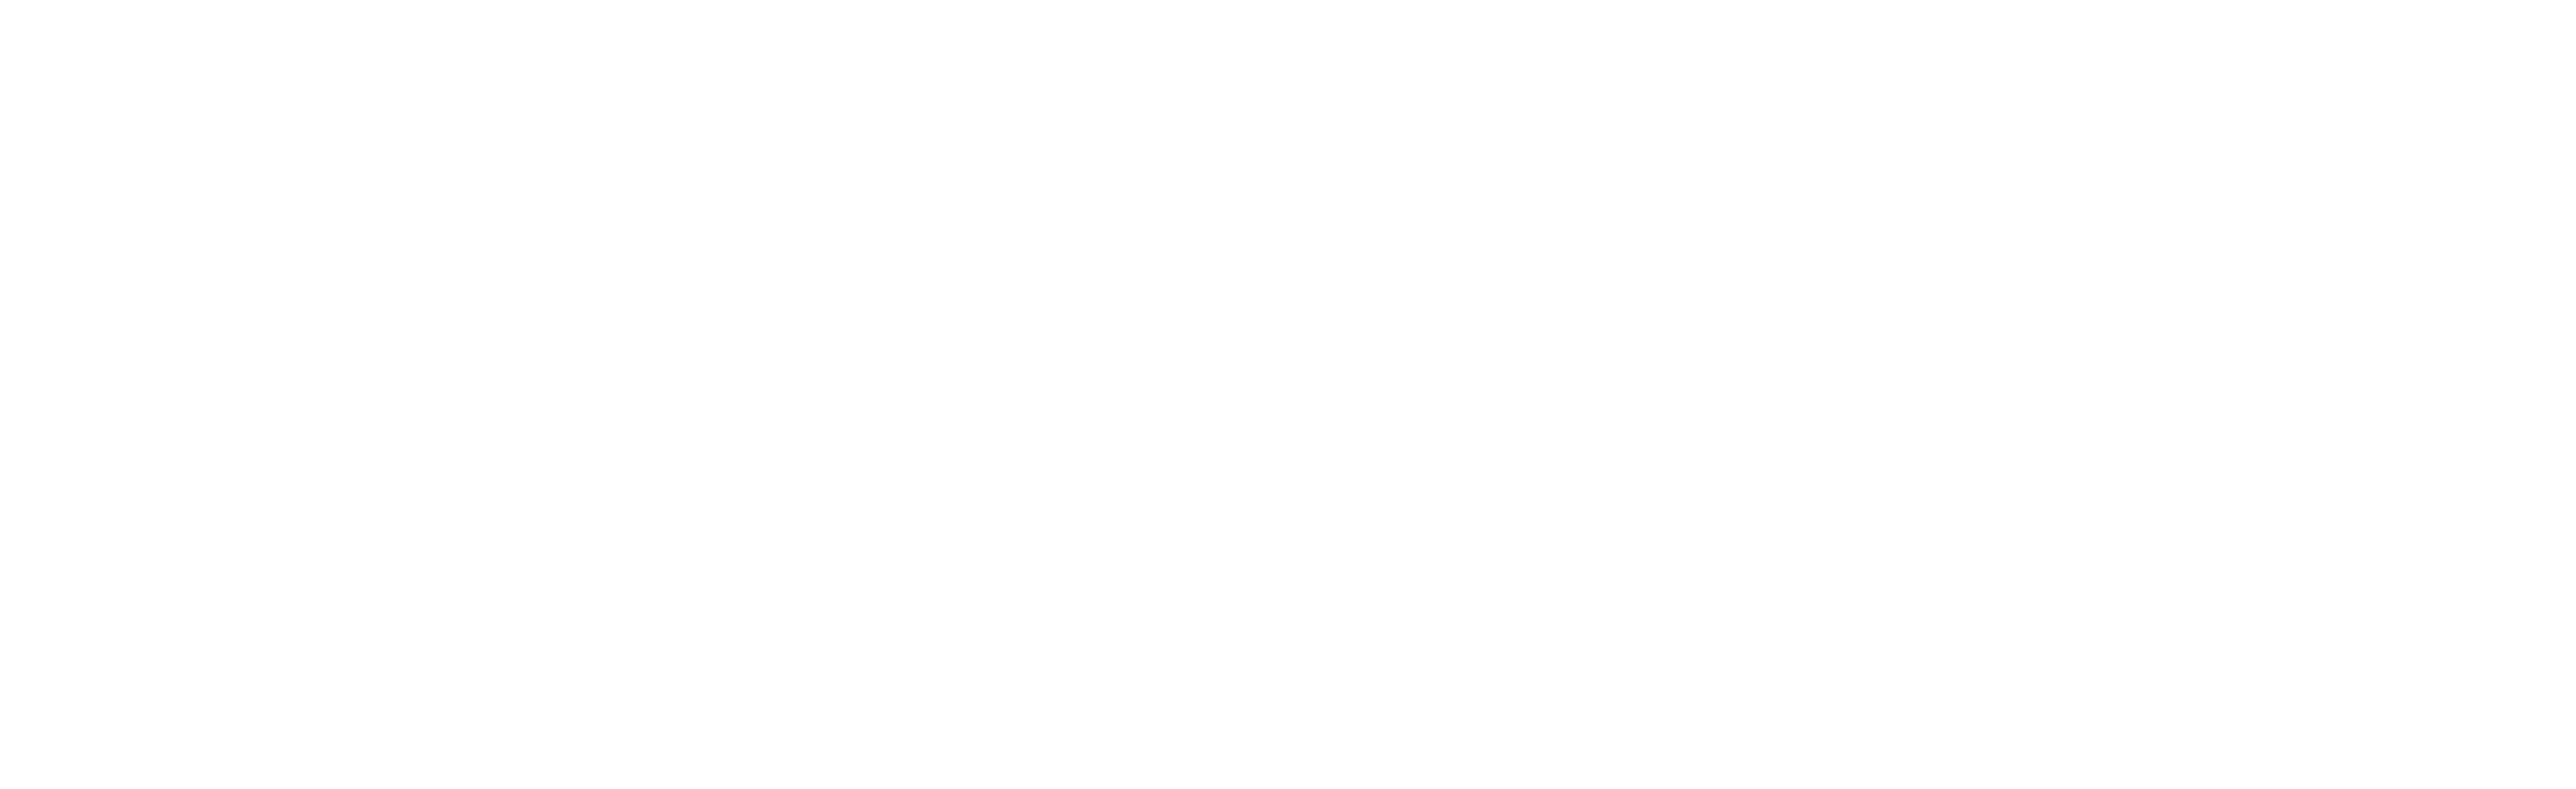 FEDEX logo